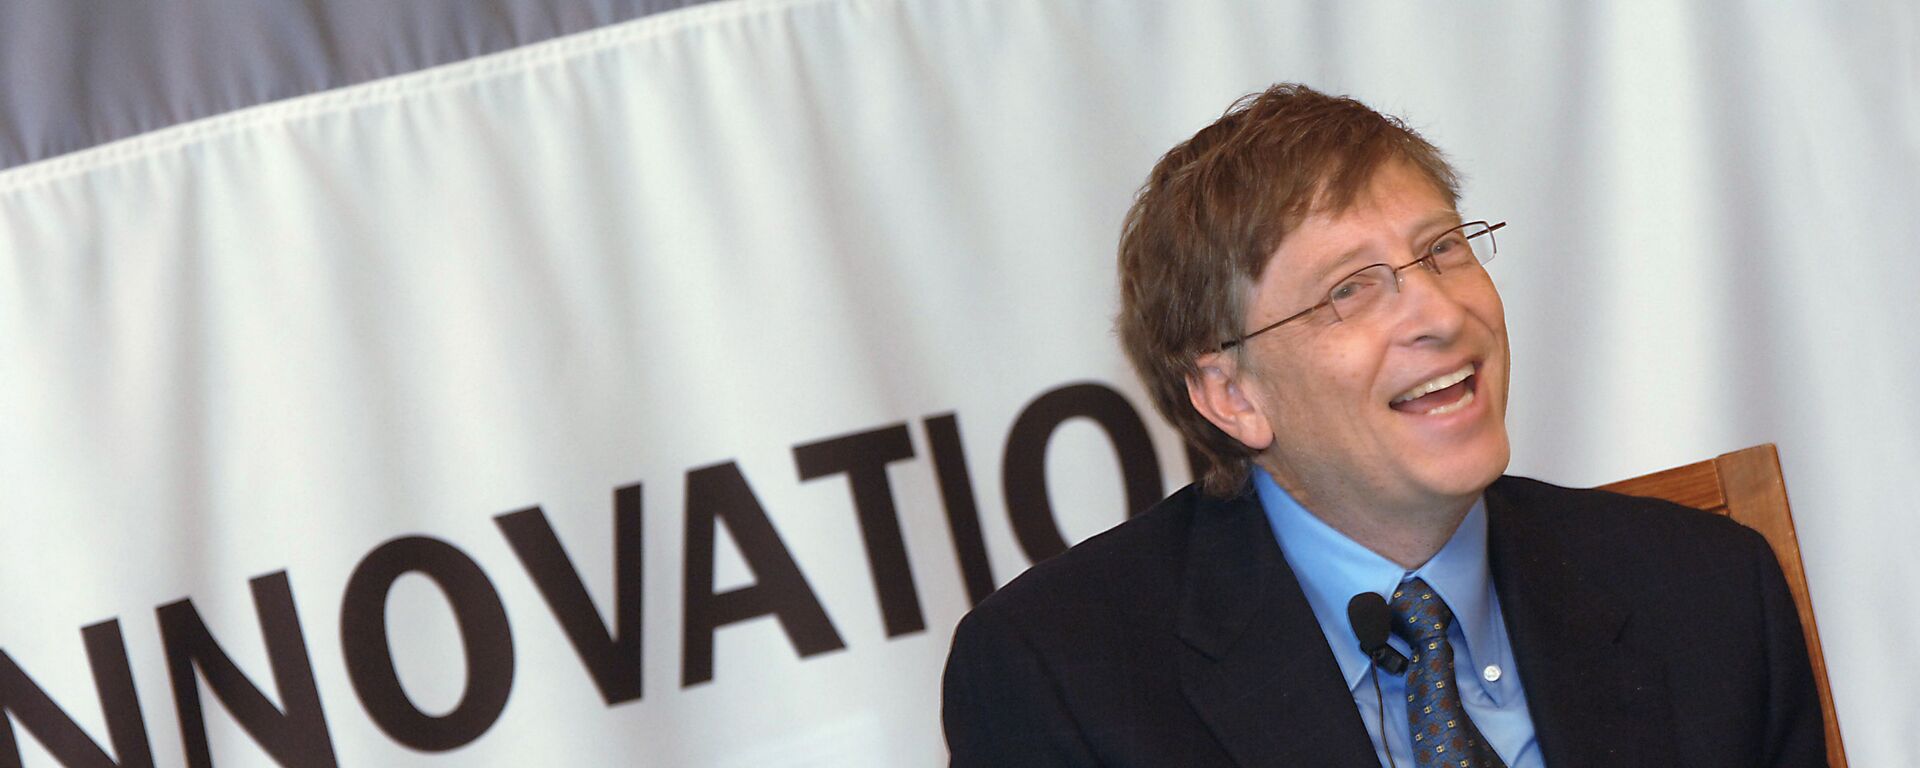 Председатель правления корпорации Microsoft Билл Гейтс в гостинице Националь. - Sputnik Արմենիա, 1920, 23.04.2020